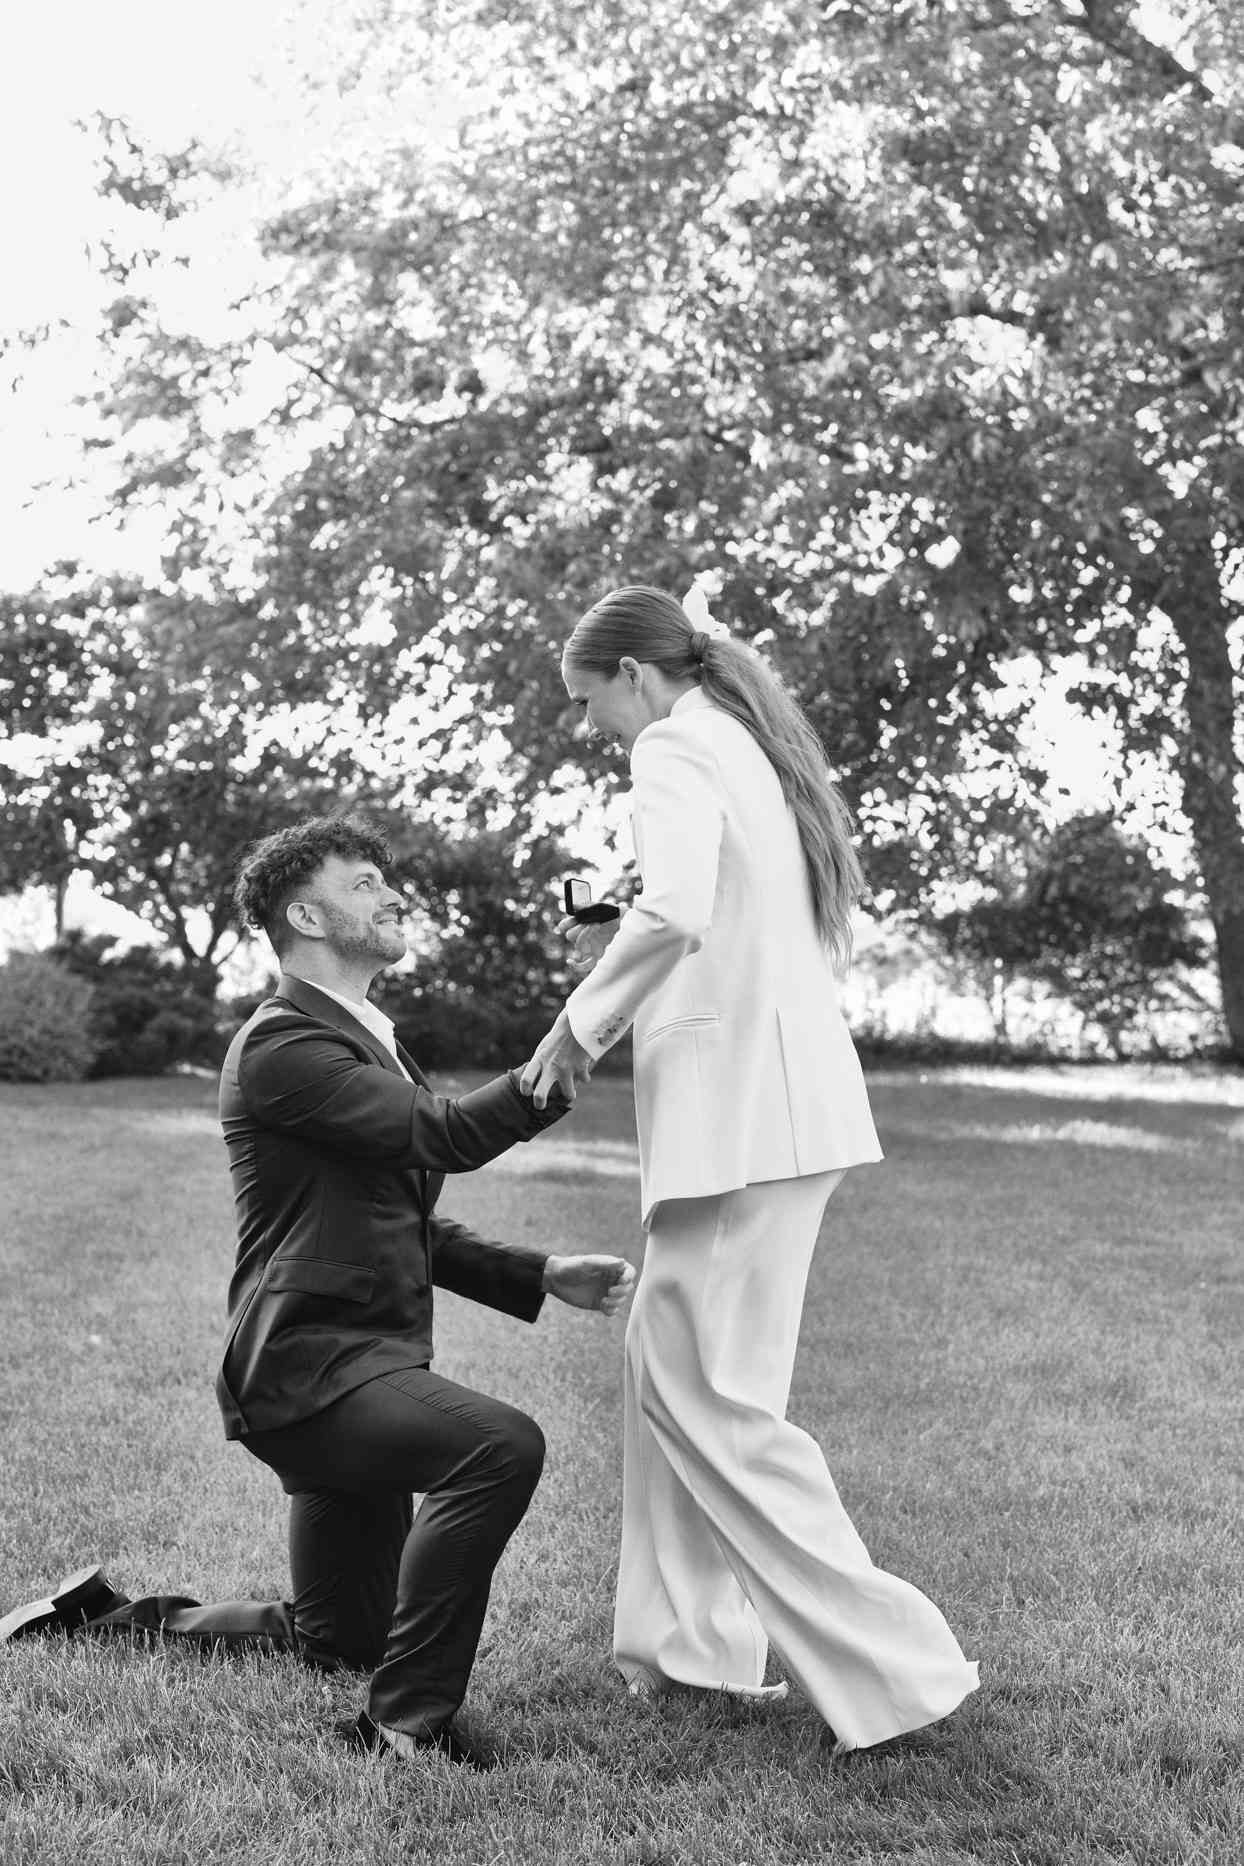 man kneeling proposing to woman